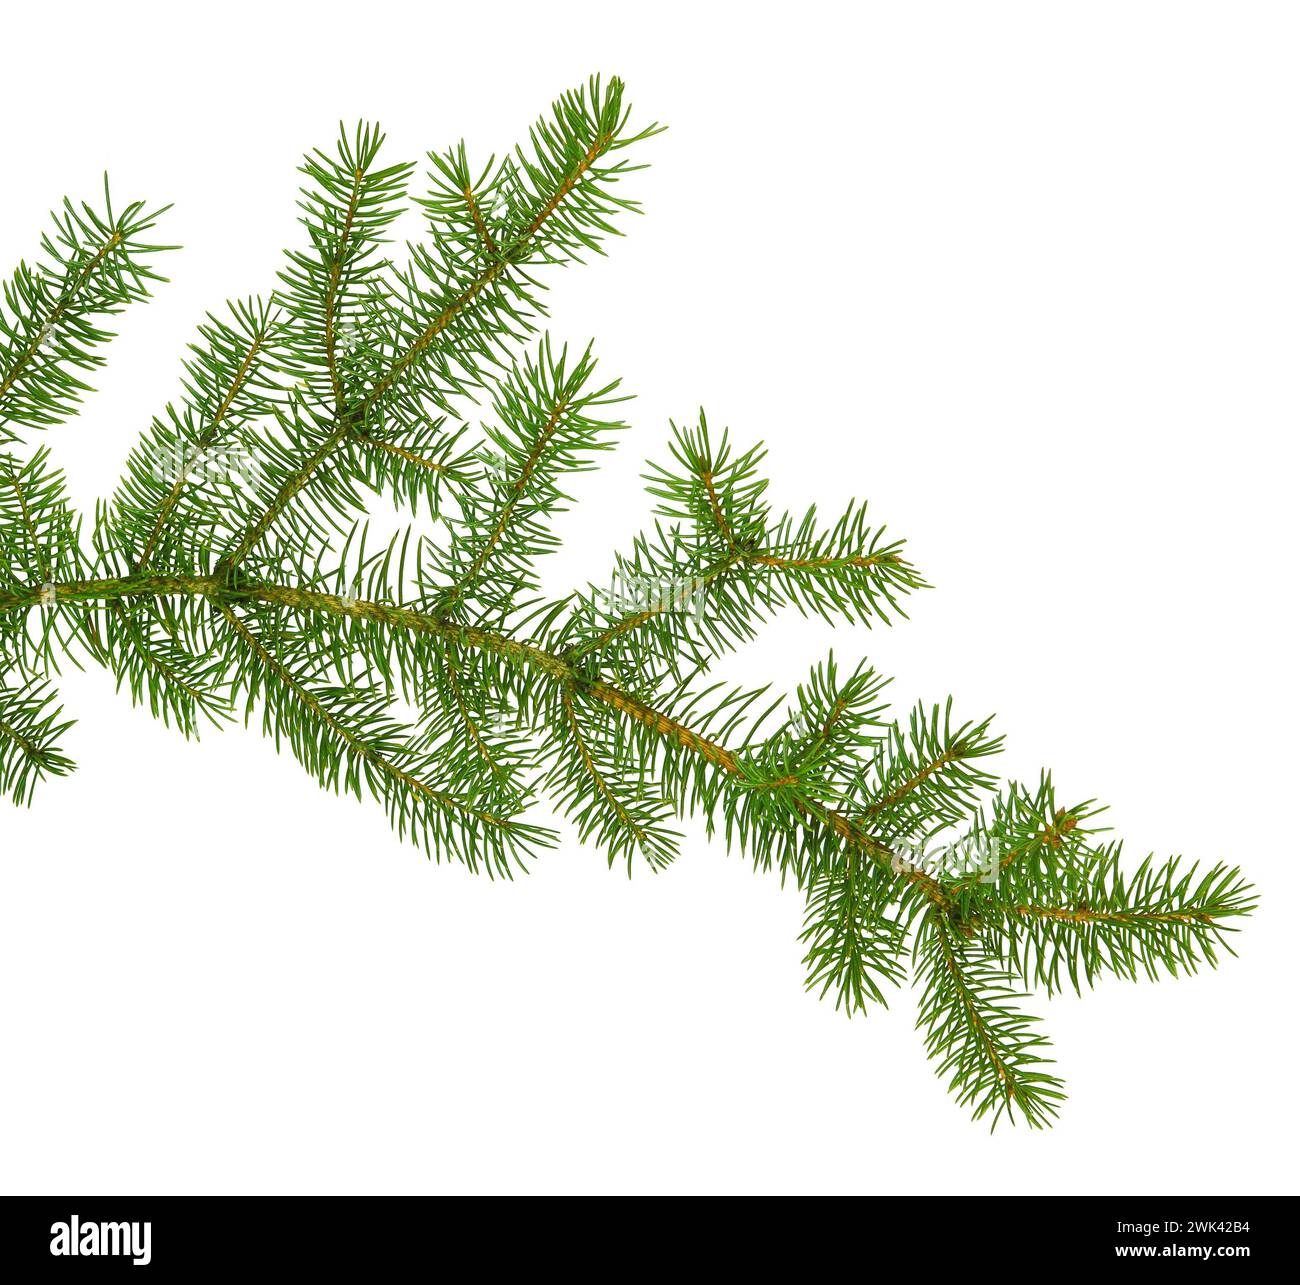 Tannen-, Tannen-, Kiefer- oder Weihnachtsbaumzweige. Nadelzweige isoliert auf weißem Hintergrund. Neujahrsgrußkarte, Bannerdesign-Element. Dekora Stockfoto